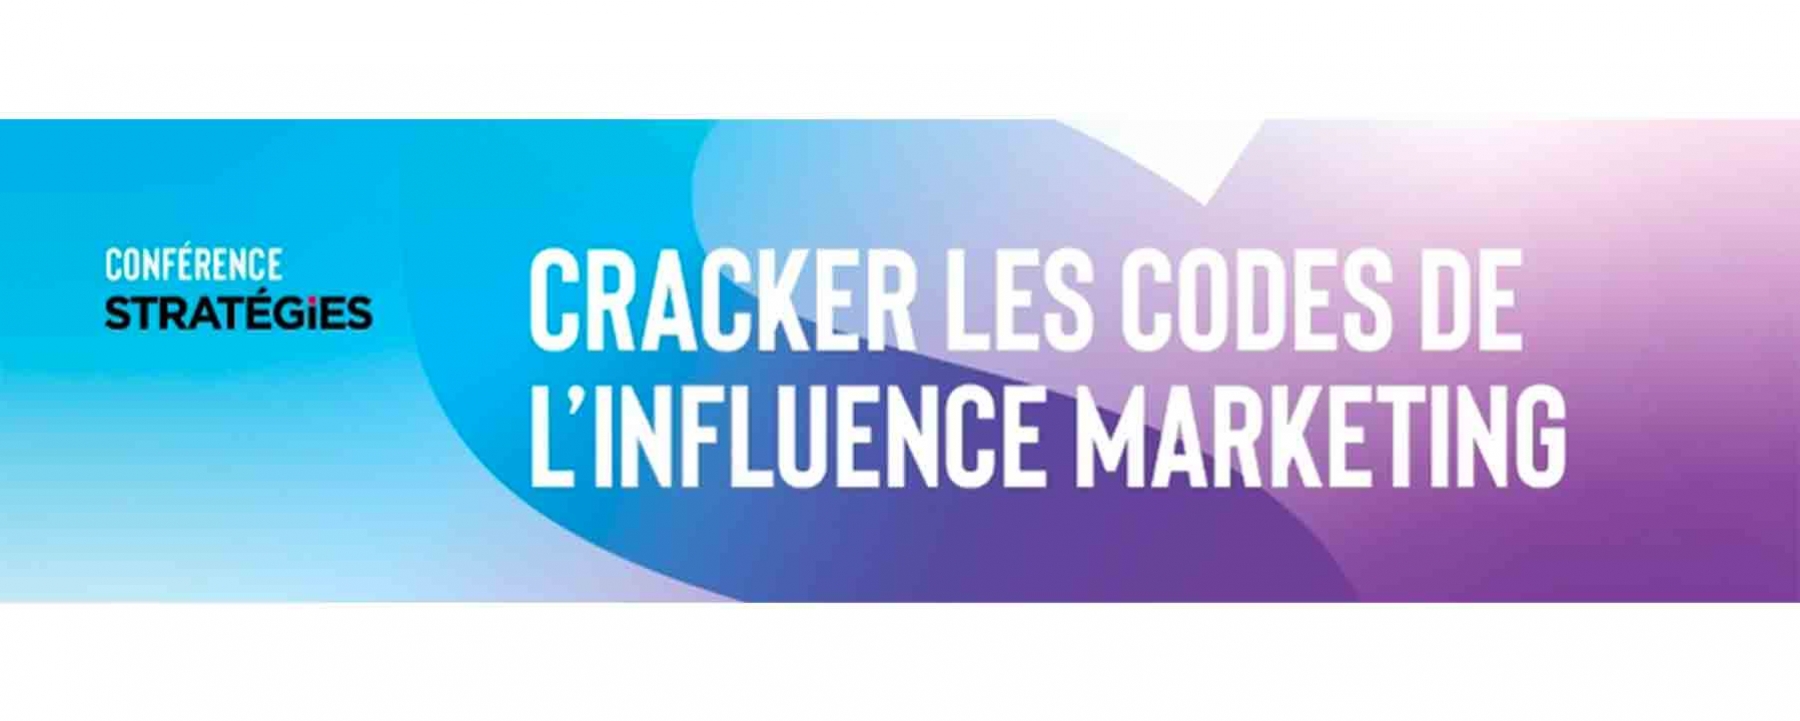 Cracker les codes de l’influence marketing